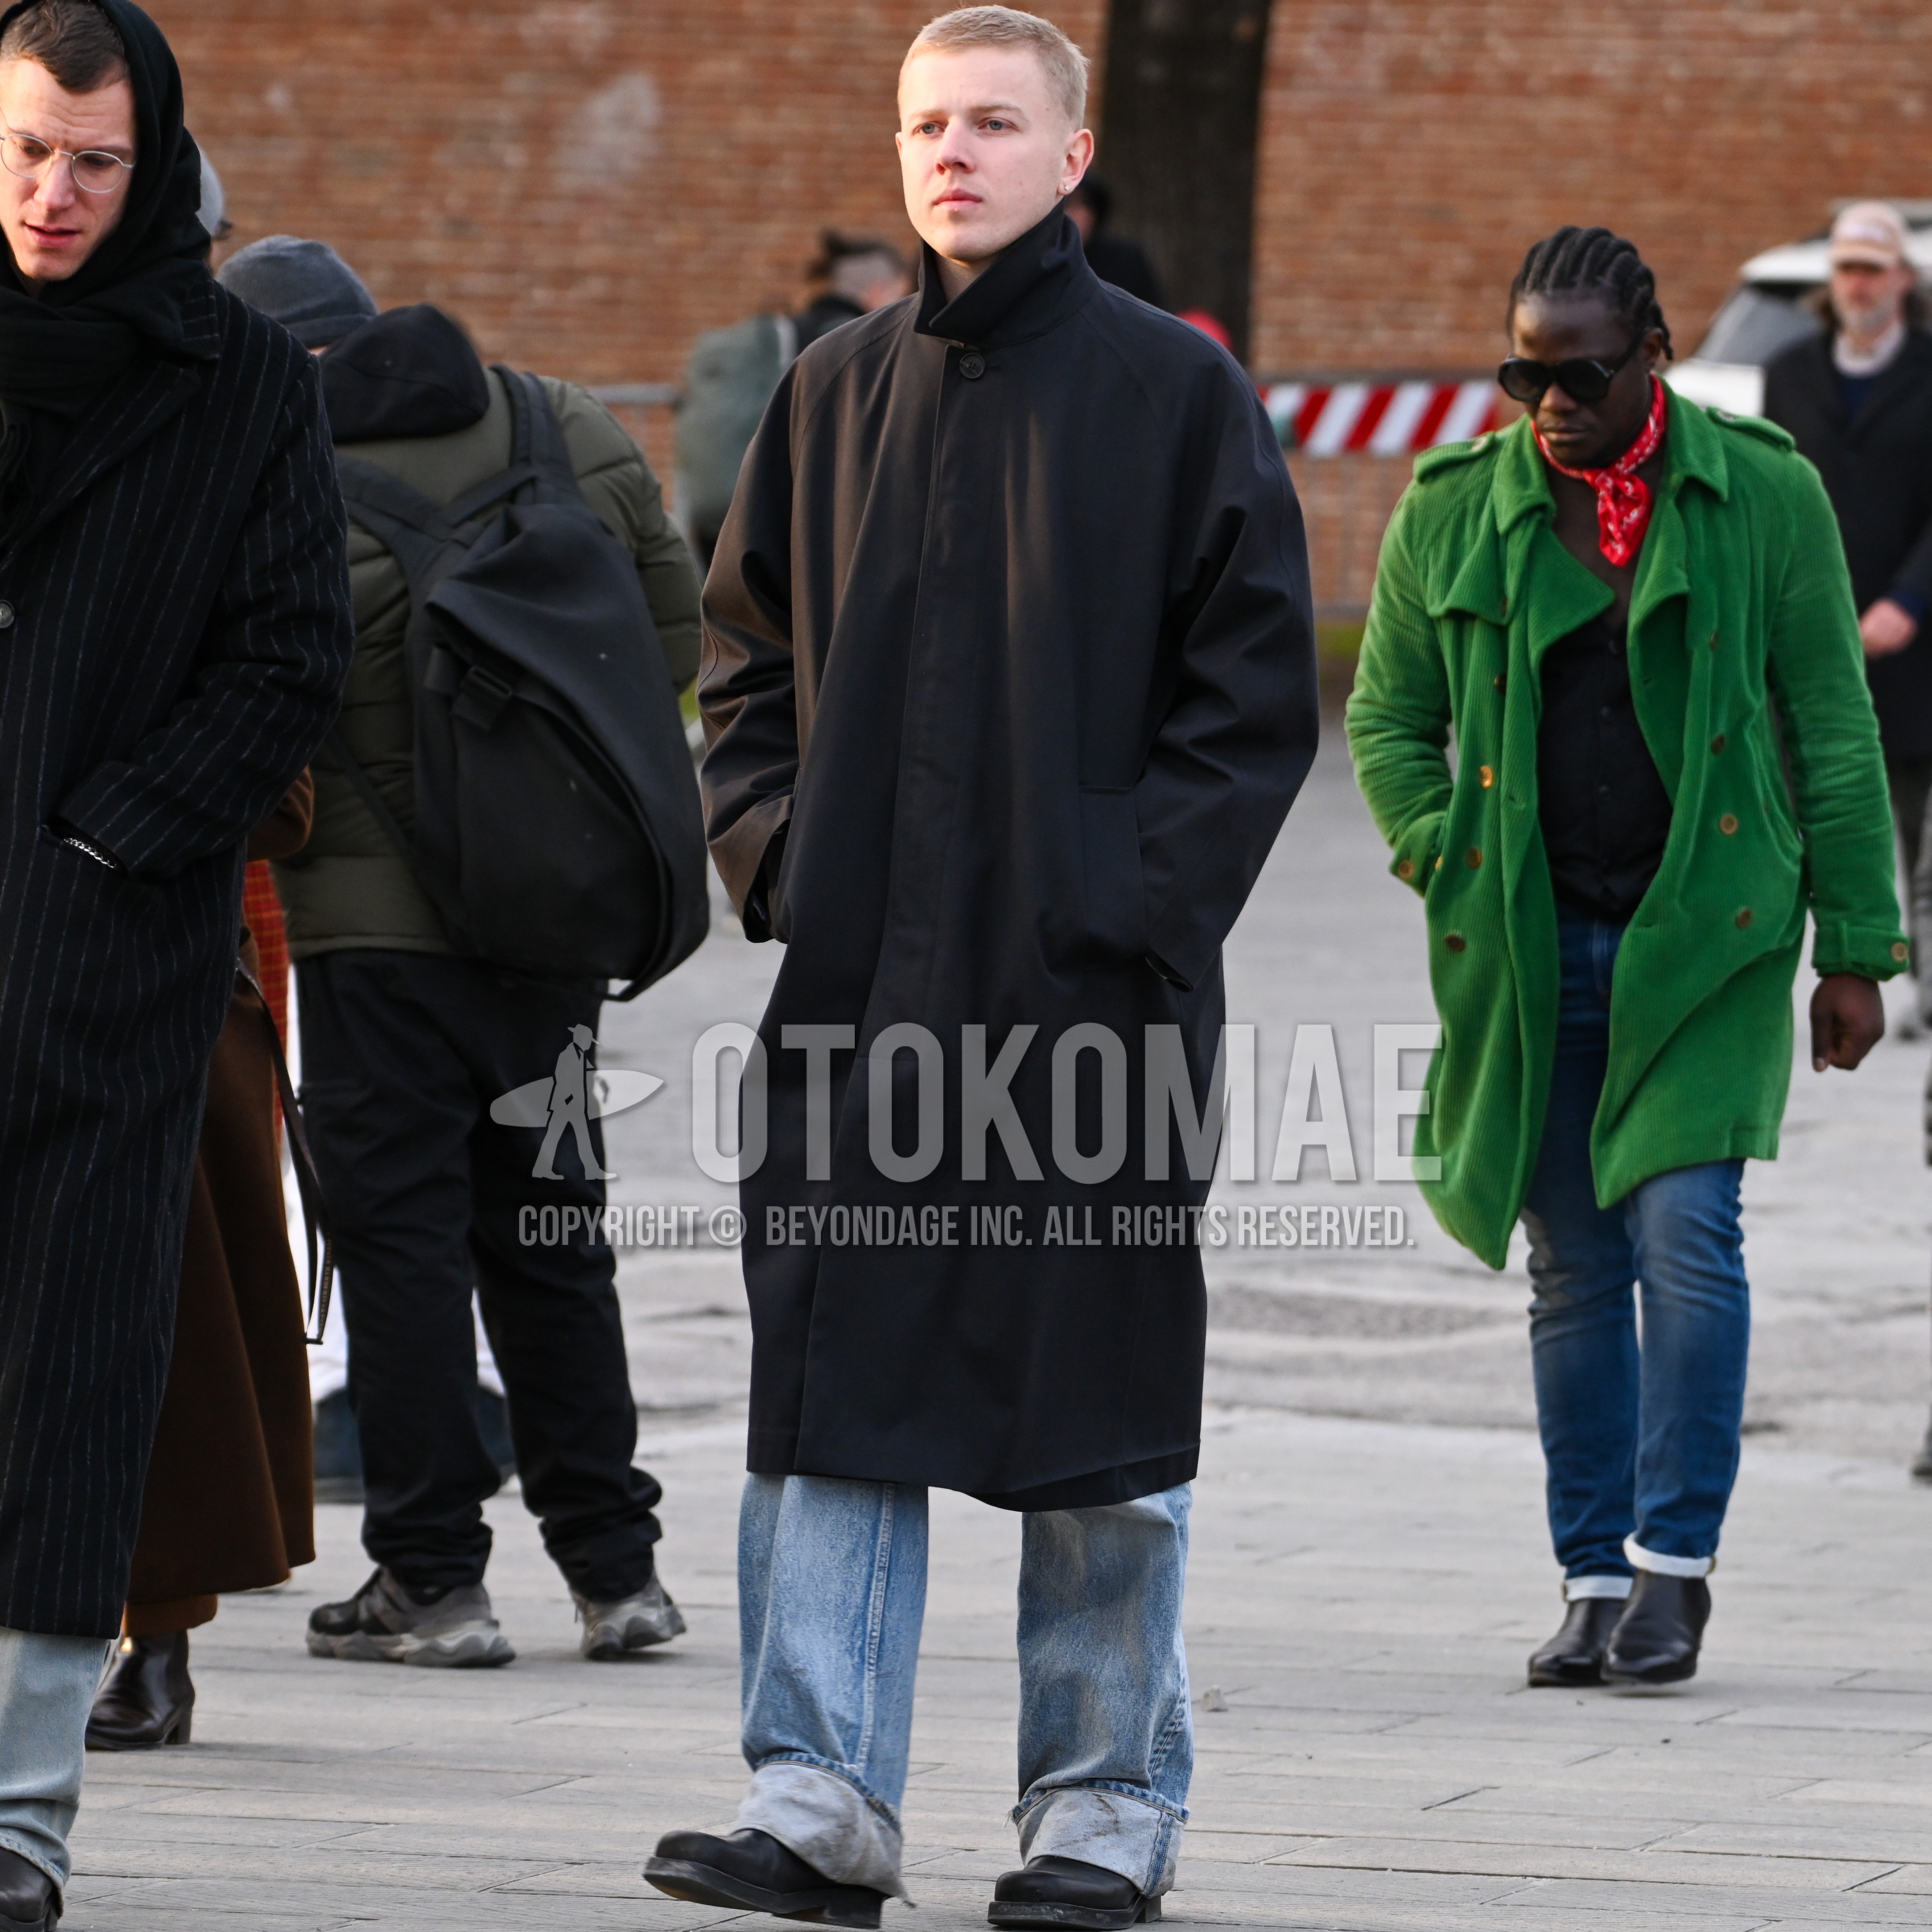 Men's autumn winter outfit with black plain stenkarrer coat, light blue plain denim/jeans, black  boots.